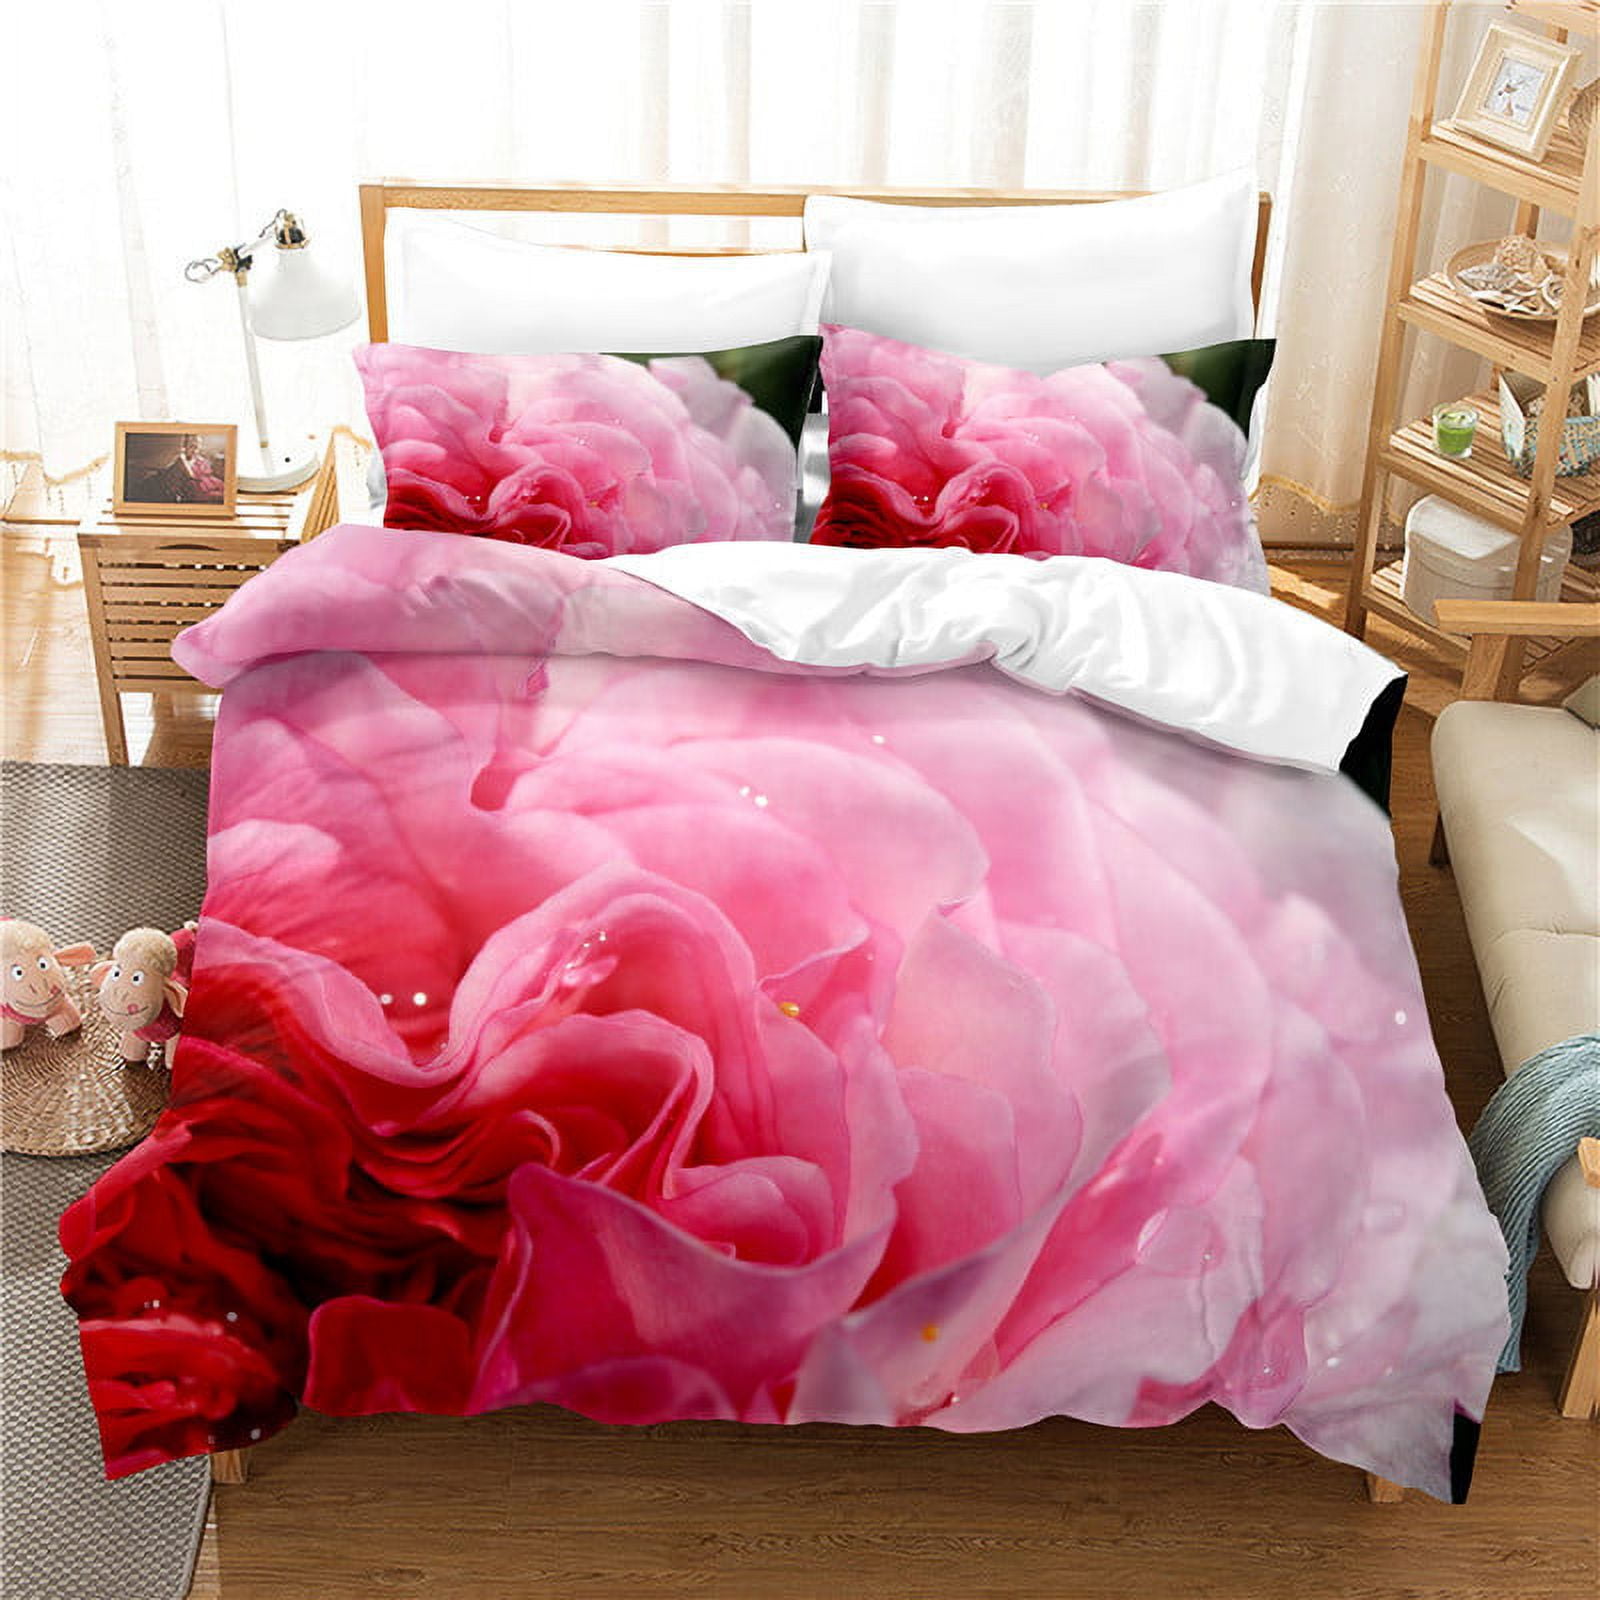 Luxury Bedding Sets Bed Sheet Wholesale Plain Color 3PCS White